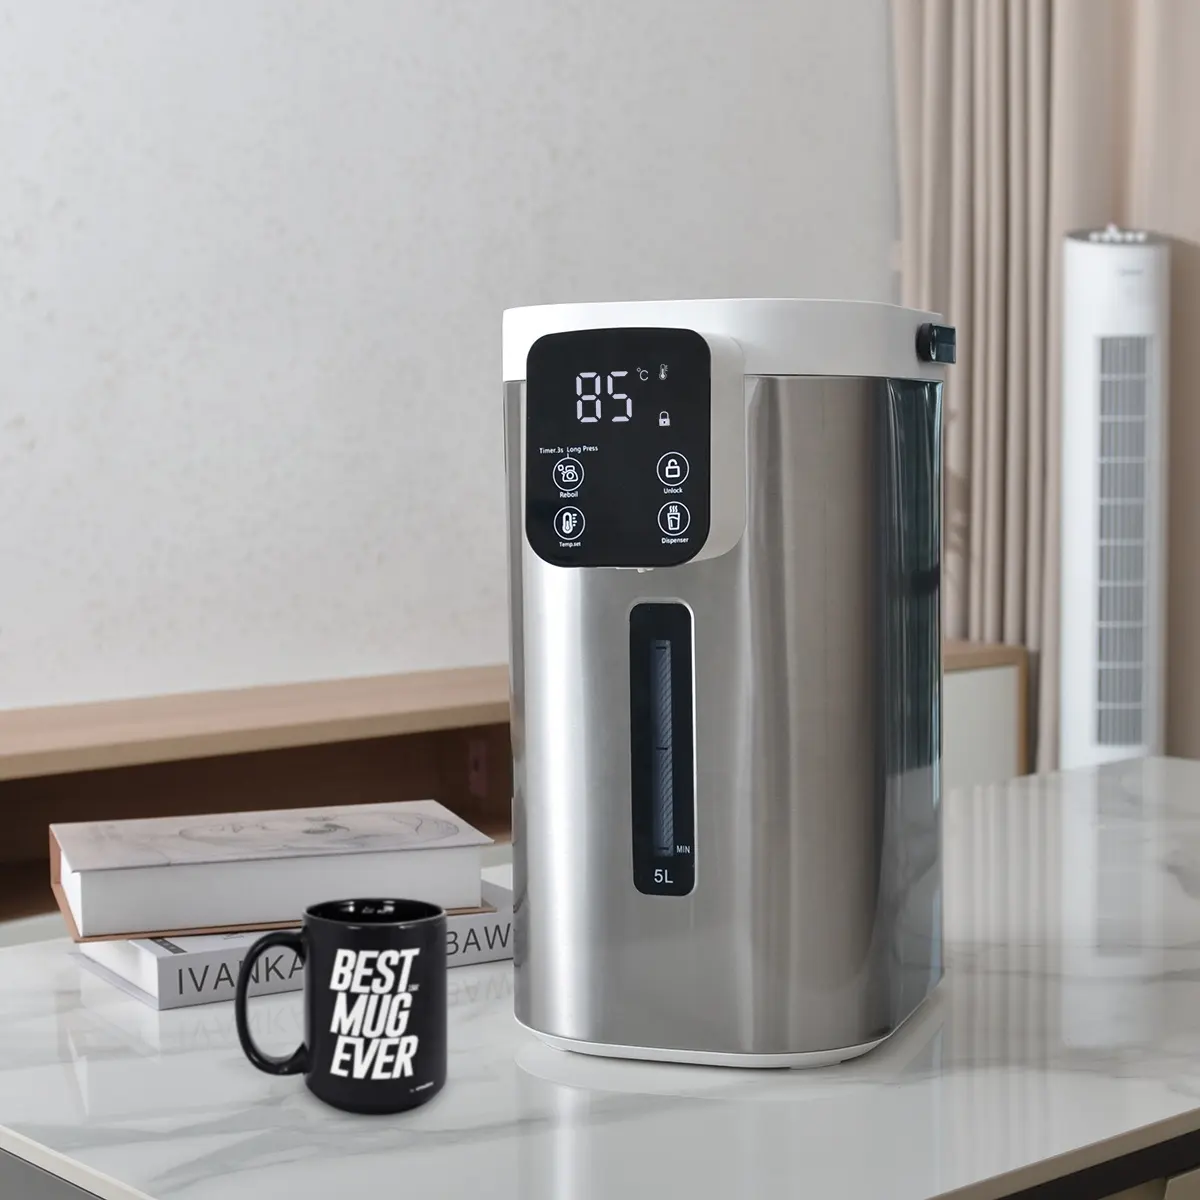 Elektrik termo Pot su kazanı 5l akıllı ev aletleri sıcak dağıtıcı paslanmaz çelik termos çay elektrikli su ısıtıcısı termo Pot